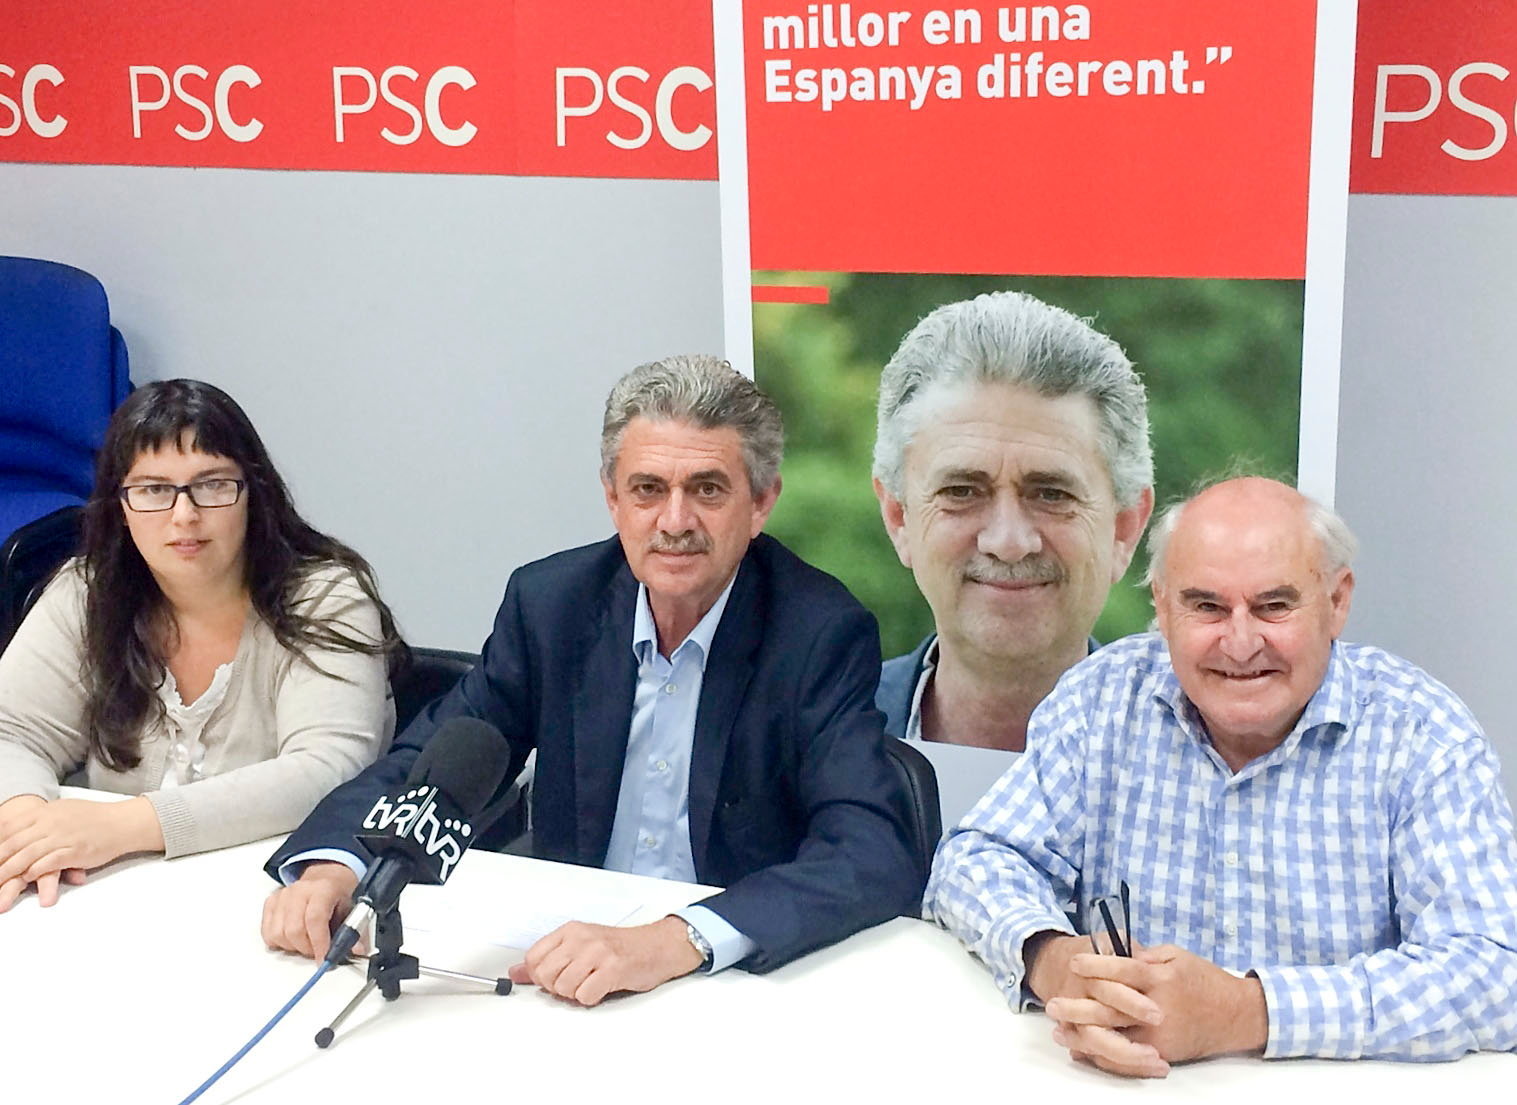 Anna Belén Avilés i Carlos Fernández flanquegen Rafel Bruguera en un acte electoral del PSC